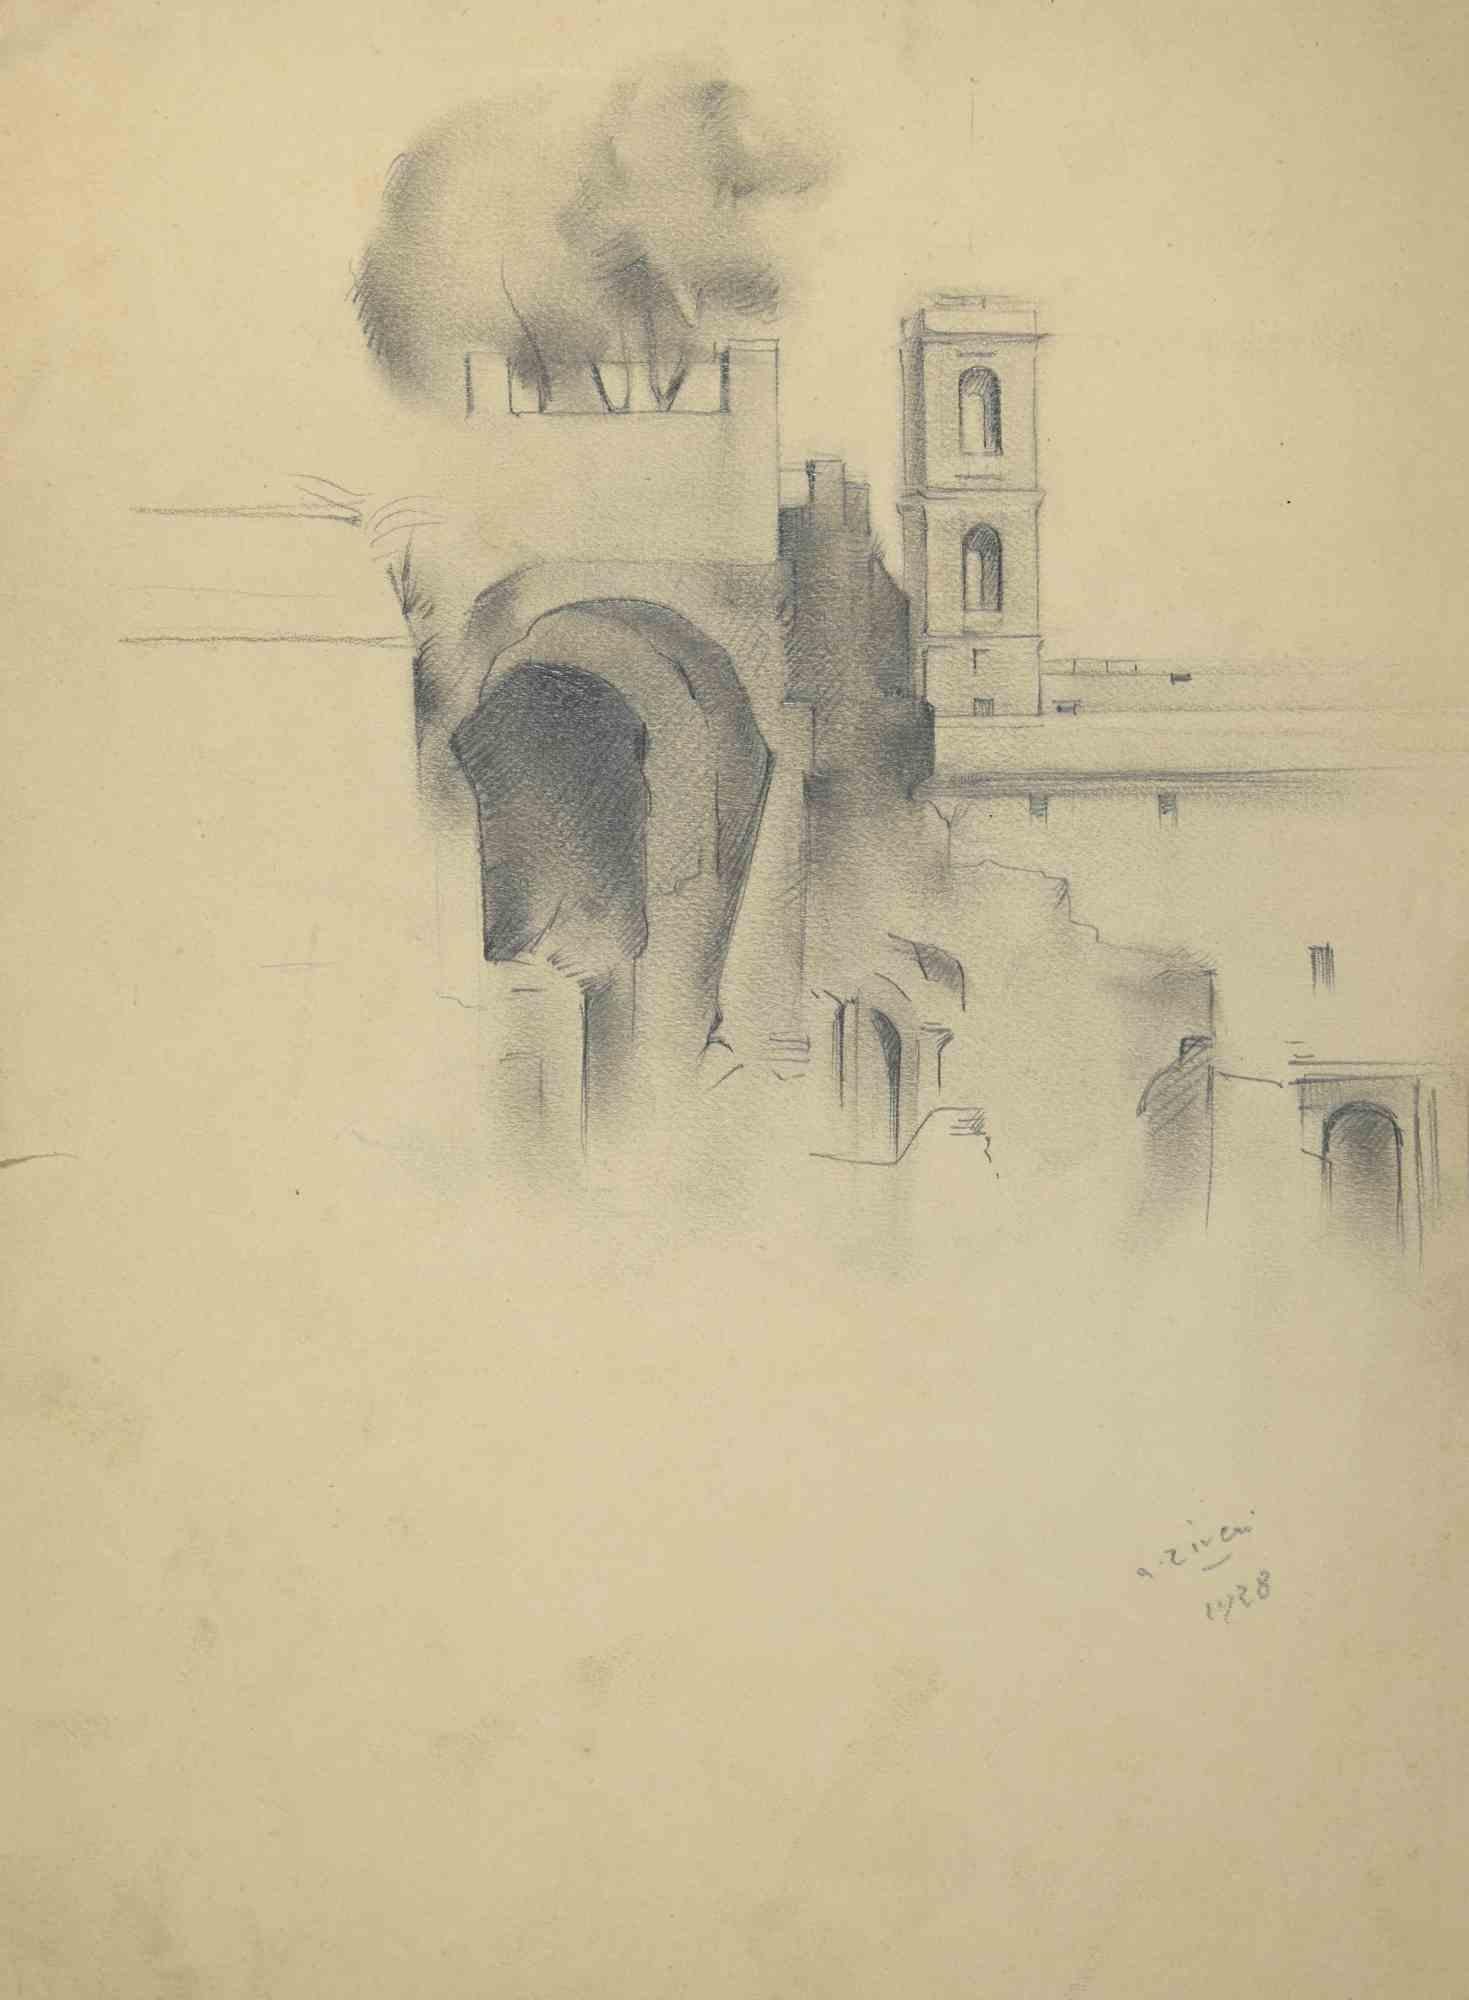 Arch Architecture ist eine Zeichnung von Alberto Ziveri aus dem Jahr 1928.

Bleistift auf Papier.

Handsigniert.

In gutem Zustand.

